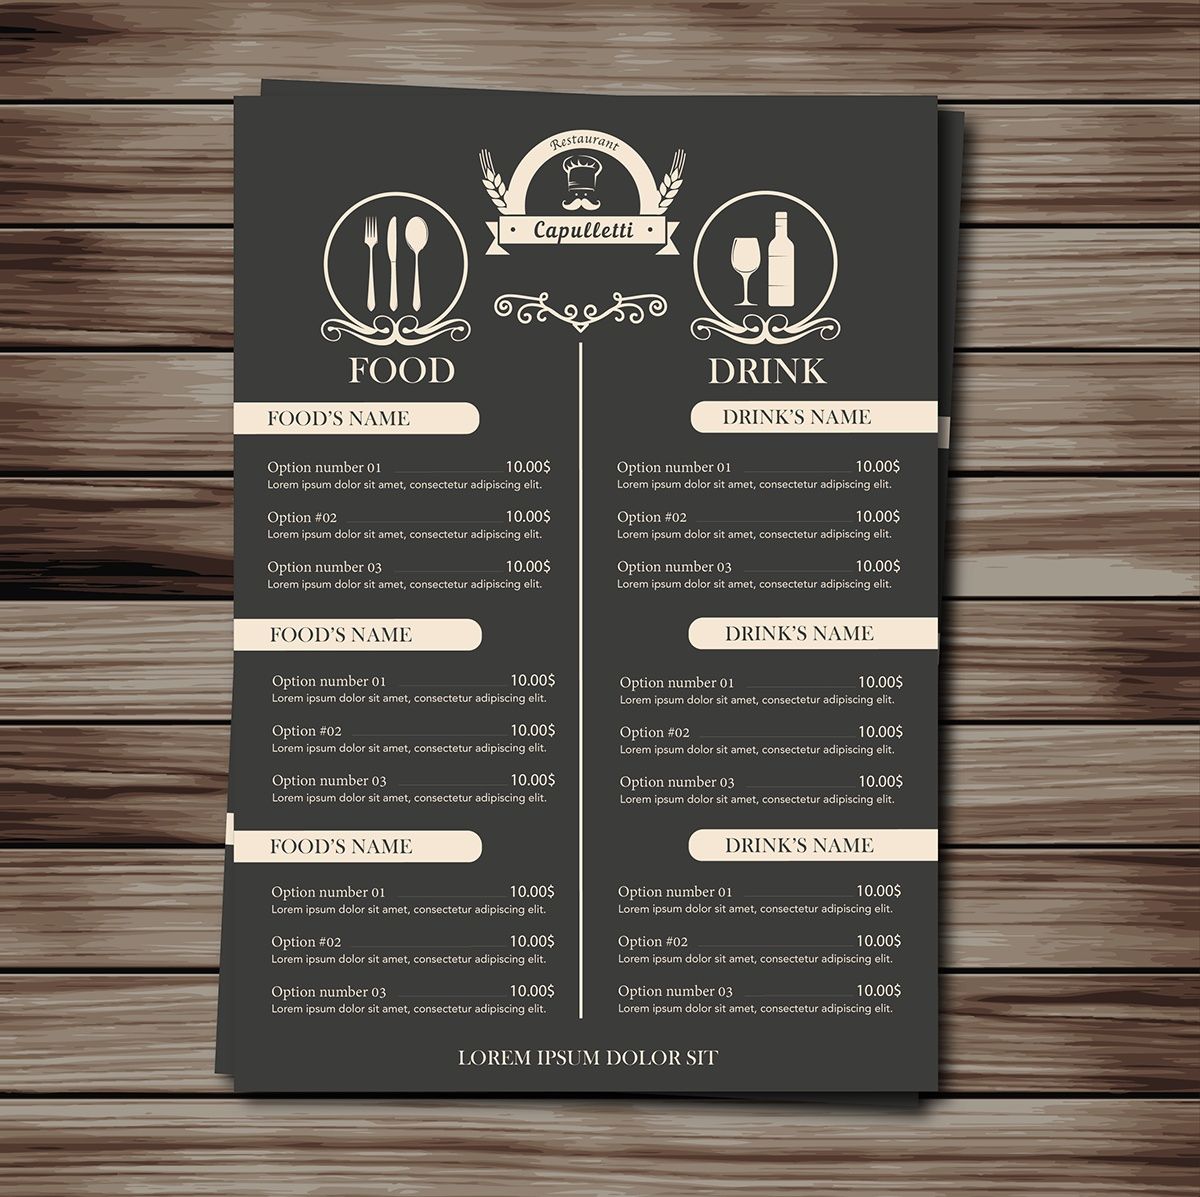 меню для ресторанов и их